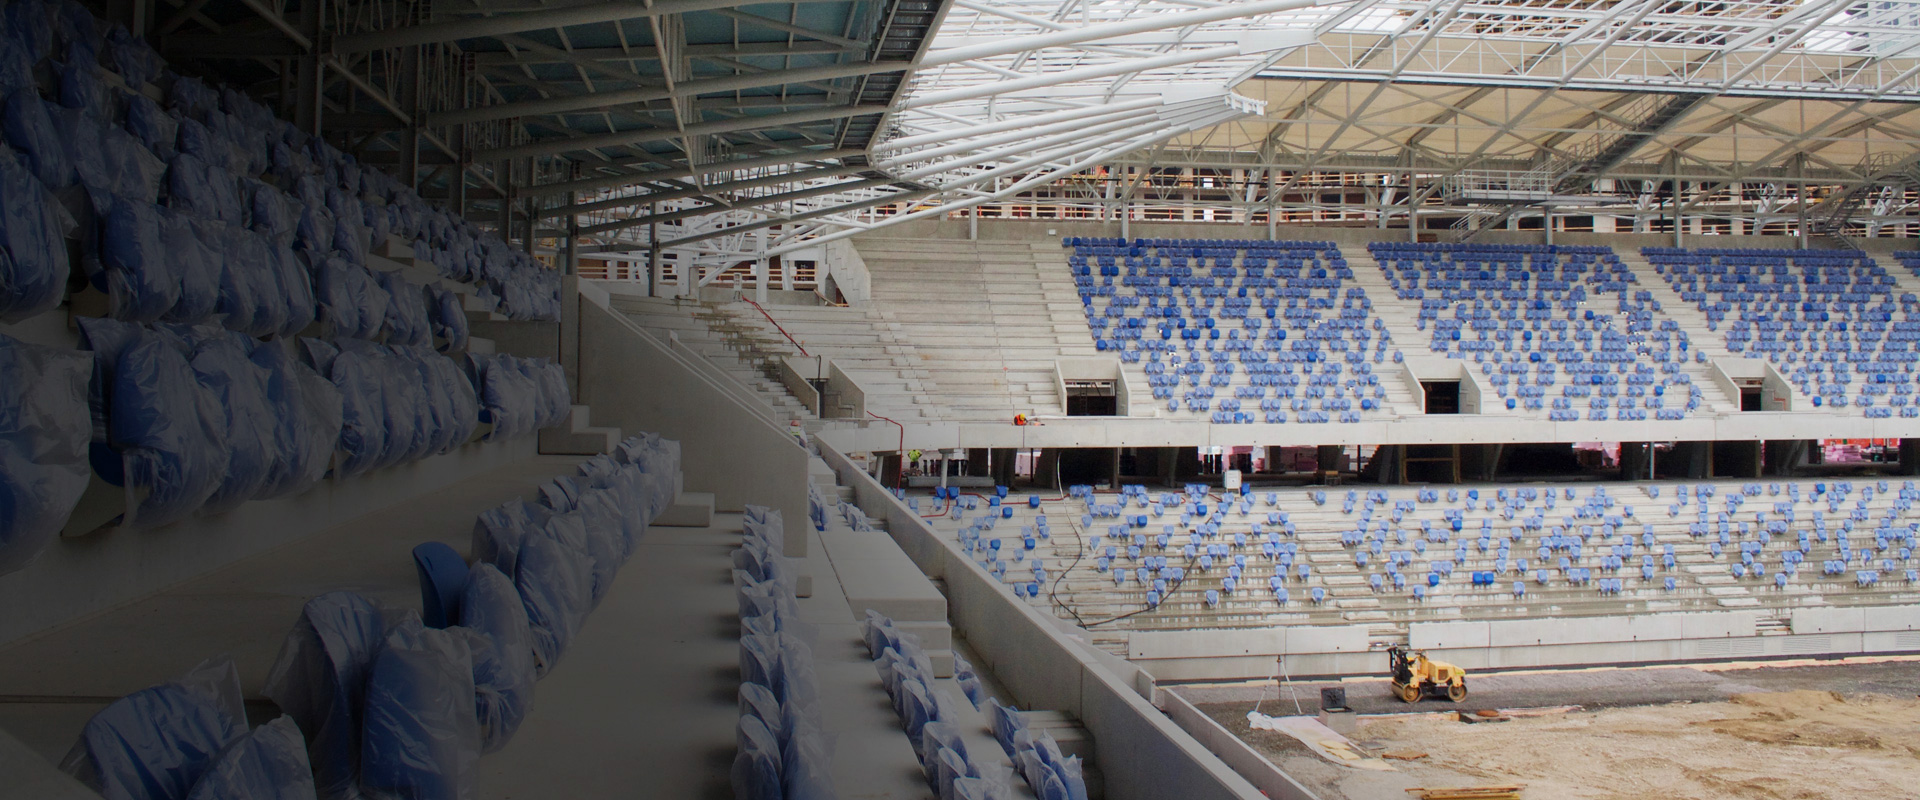 Das neue Nationalstadion in Bratislava erhält die höchste UEFA-Stadionkategorie